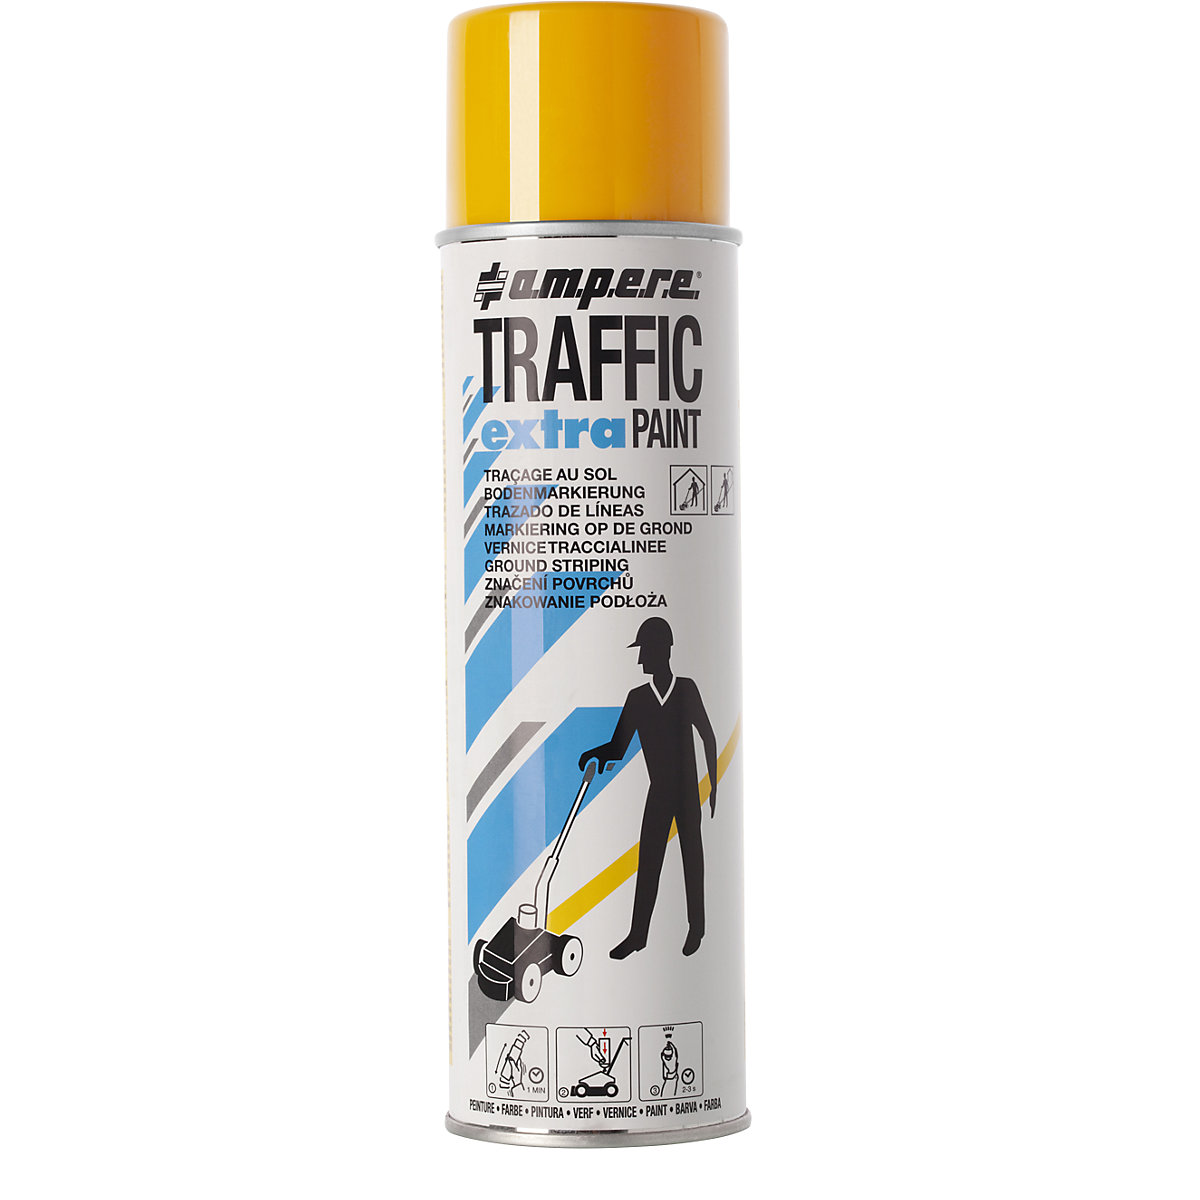 Peinture de marquage Traffic extra Paint® pour fortes contraintes - Ampere